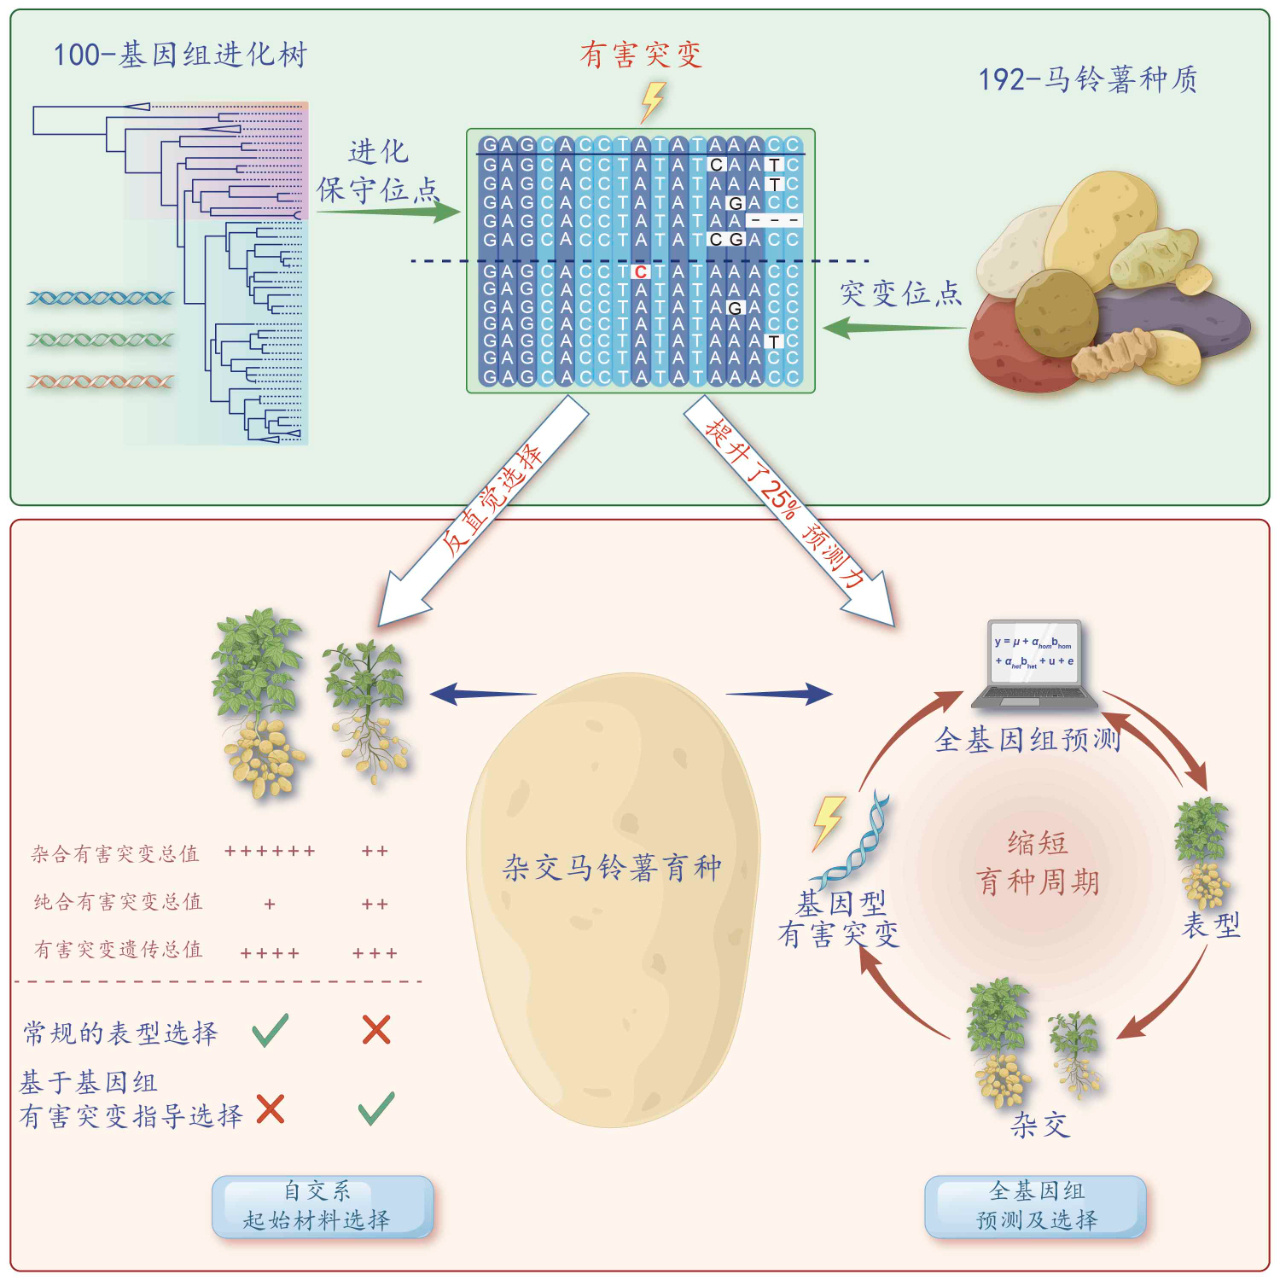 中国热科院开发“进化透镜”技术 加快杂交马铃薯育种